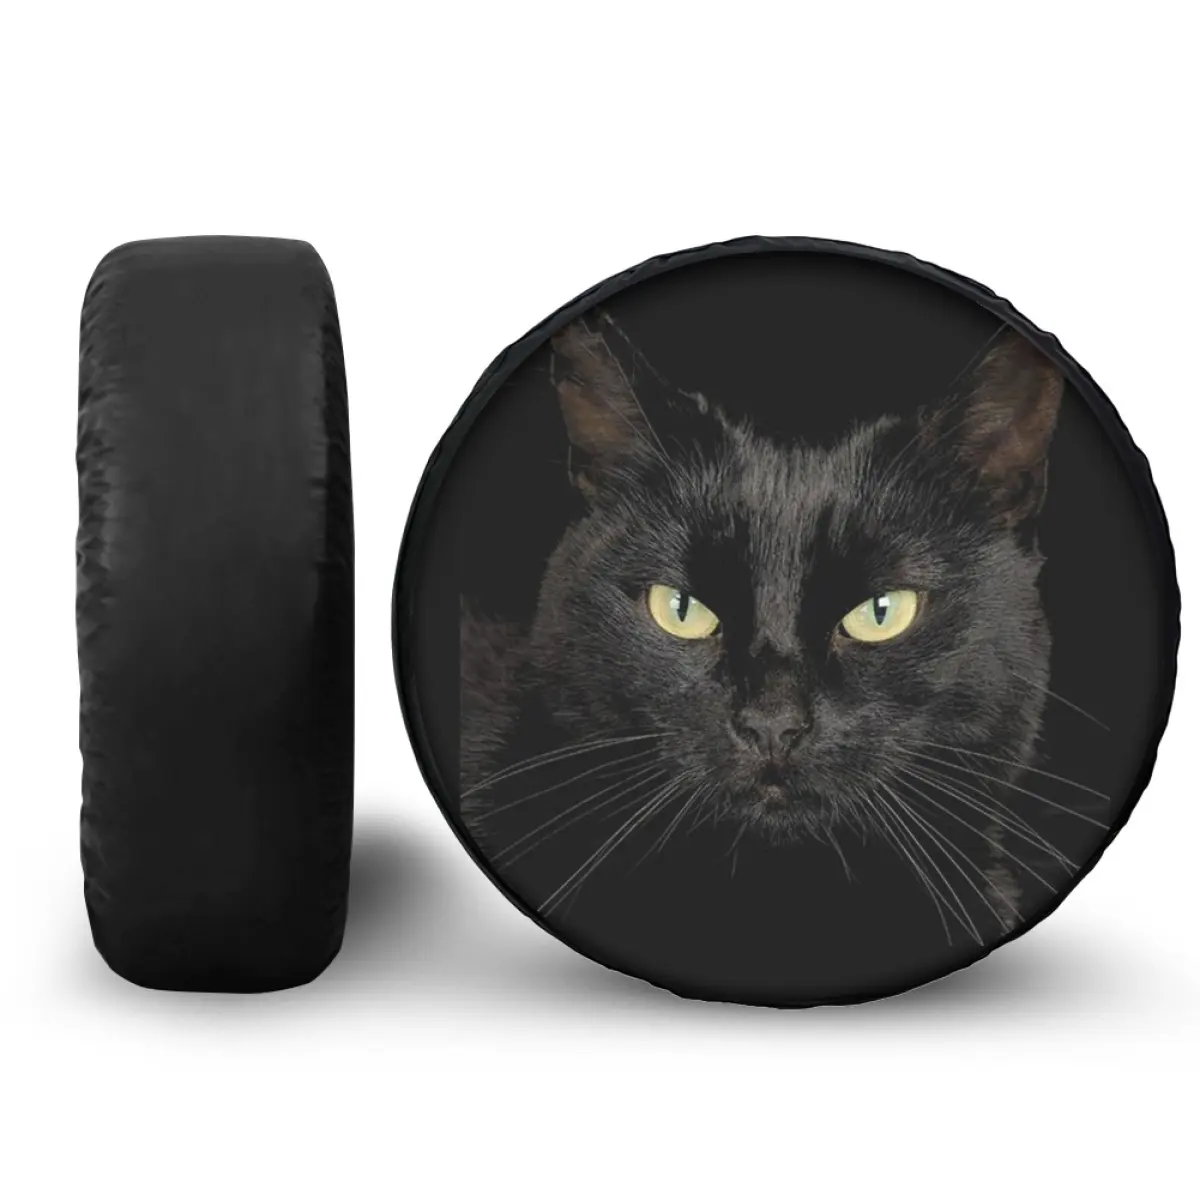 Универсальный чехол для запасного колеса автомобиля с принтом черного кота из искусственной кожи, чехлы на колеса с индивидуальным узором, защита для всех автомобилей 14-18 дюймов